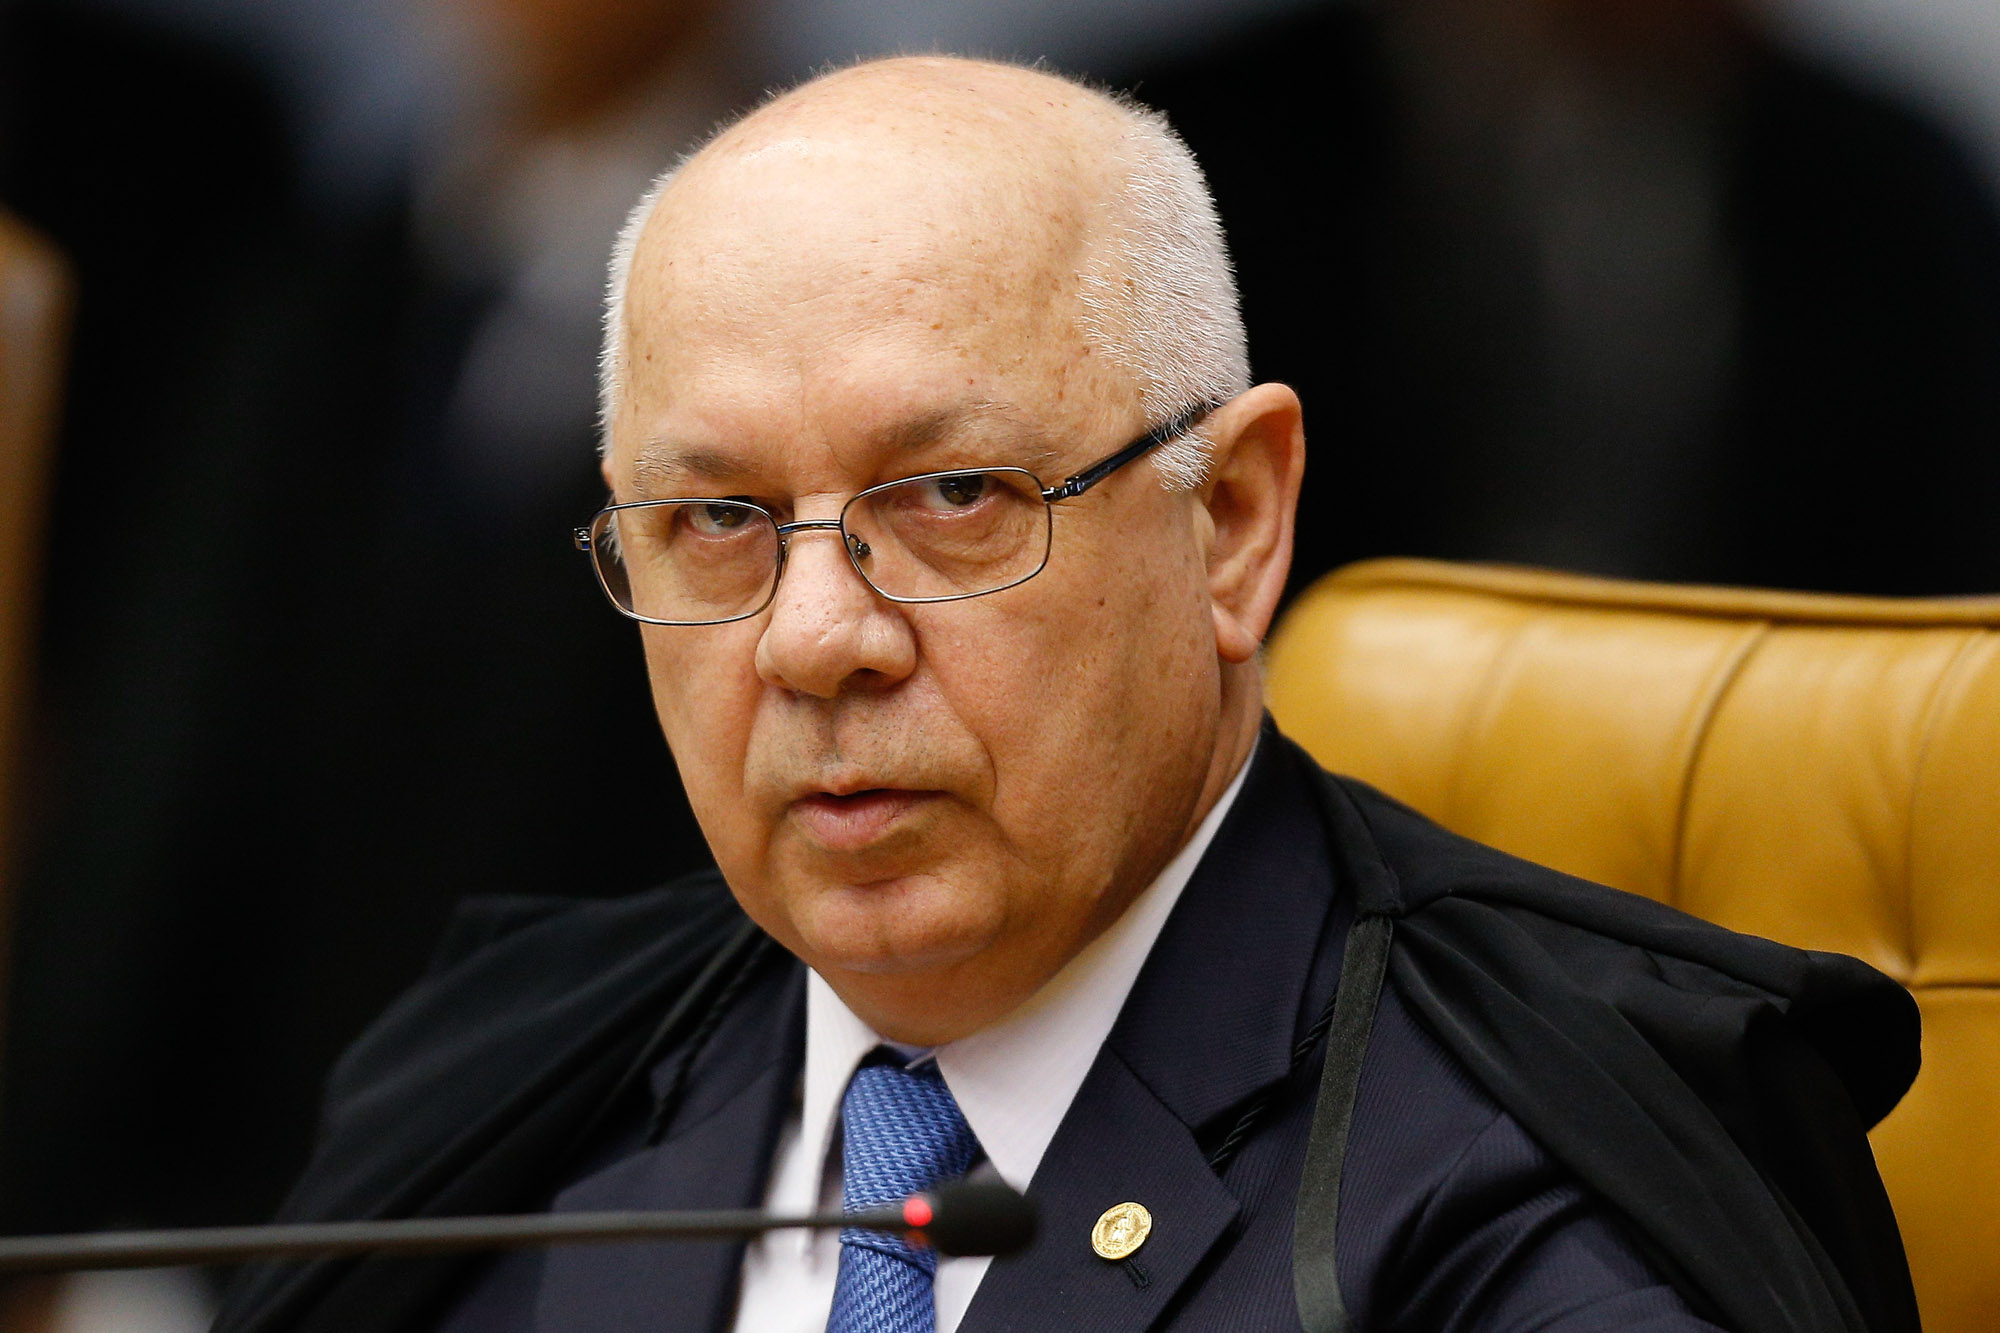 Teori Zavascki durante sessão no plenário do Superior Tribunal de Justiça (STF), em Brasília, em março de 2015